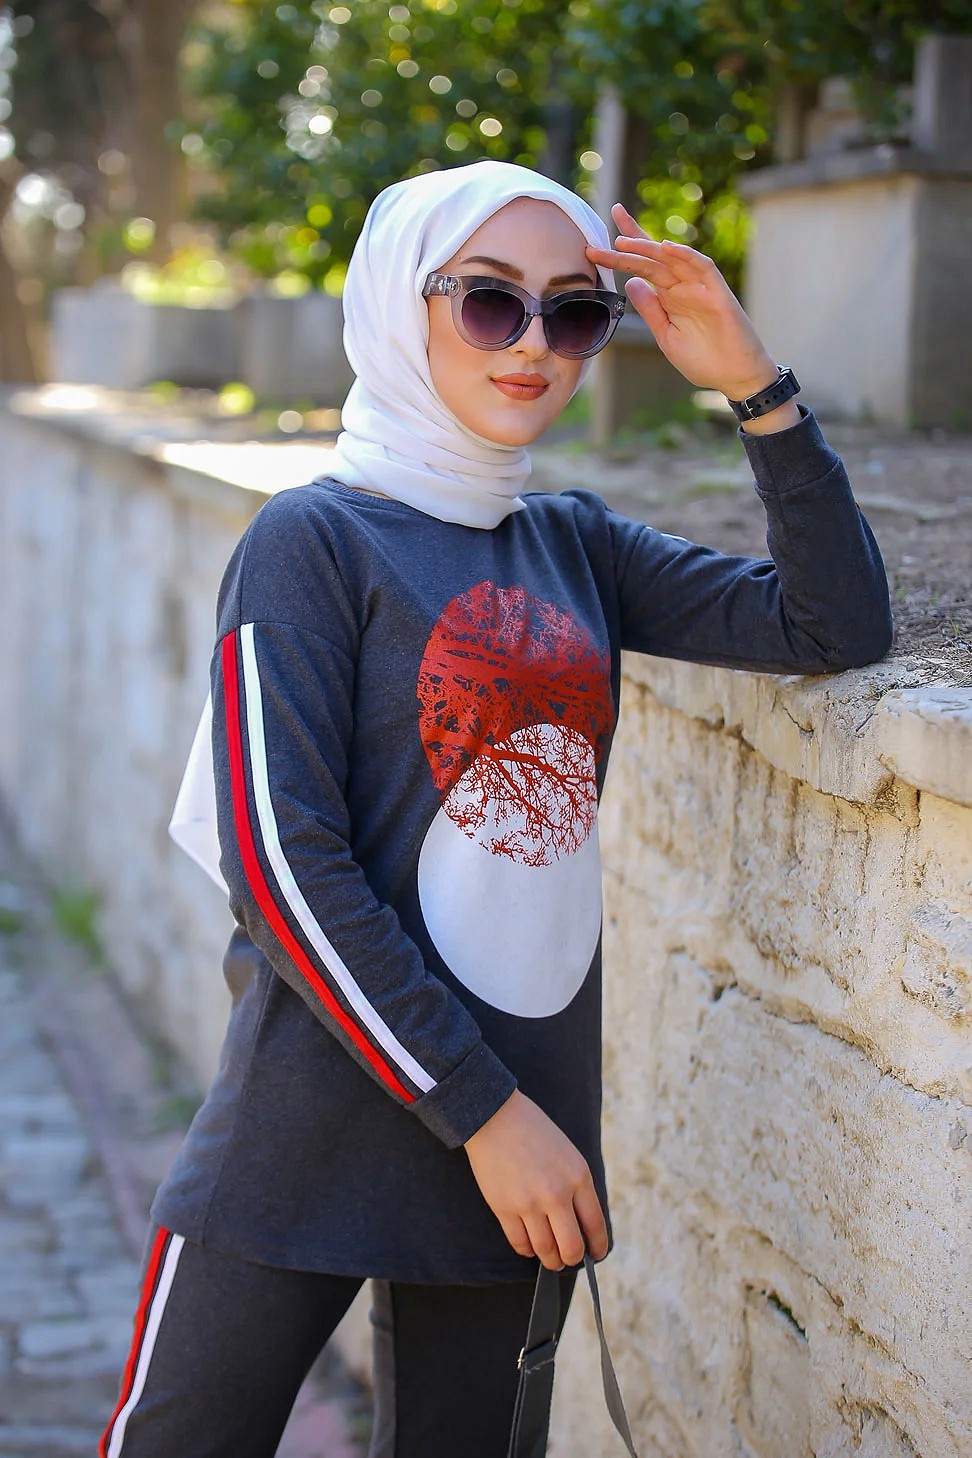 Ensemble jogging pour femme (Vetement sport hijab) - Couleur anthracite -  Prêt à porter et accessoires sur